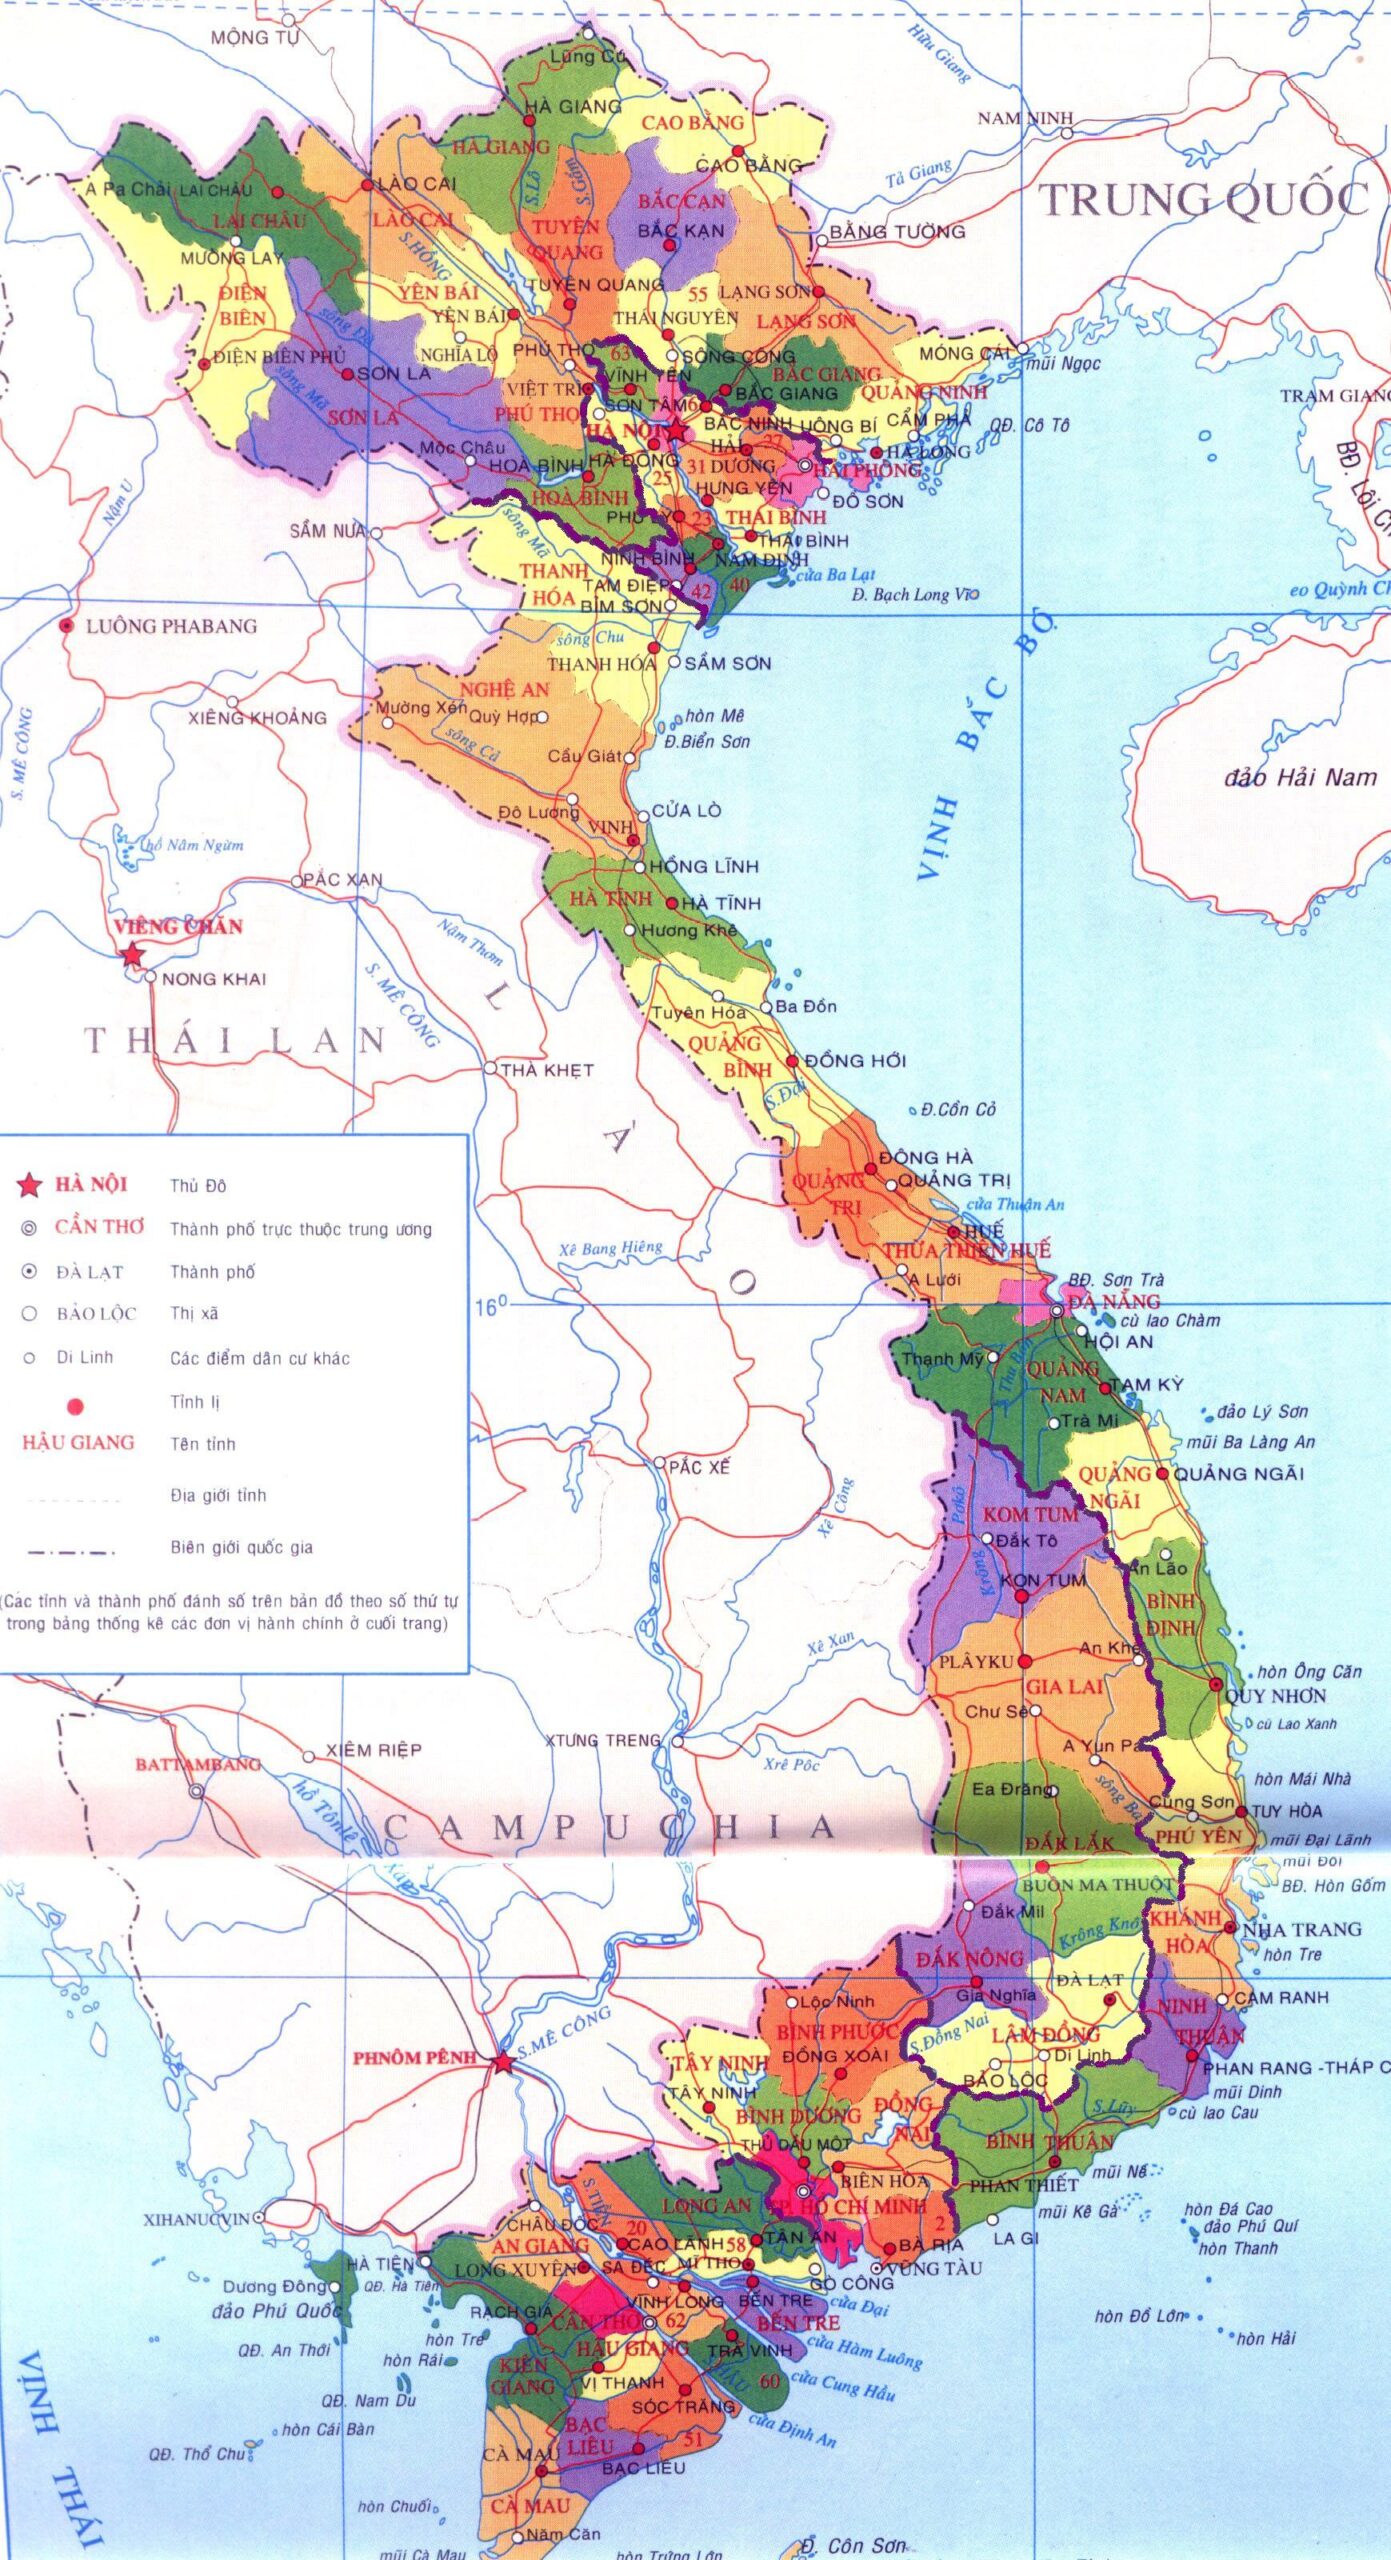 Bản đồ hành chính Việt Nam khổ lớn